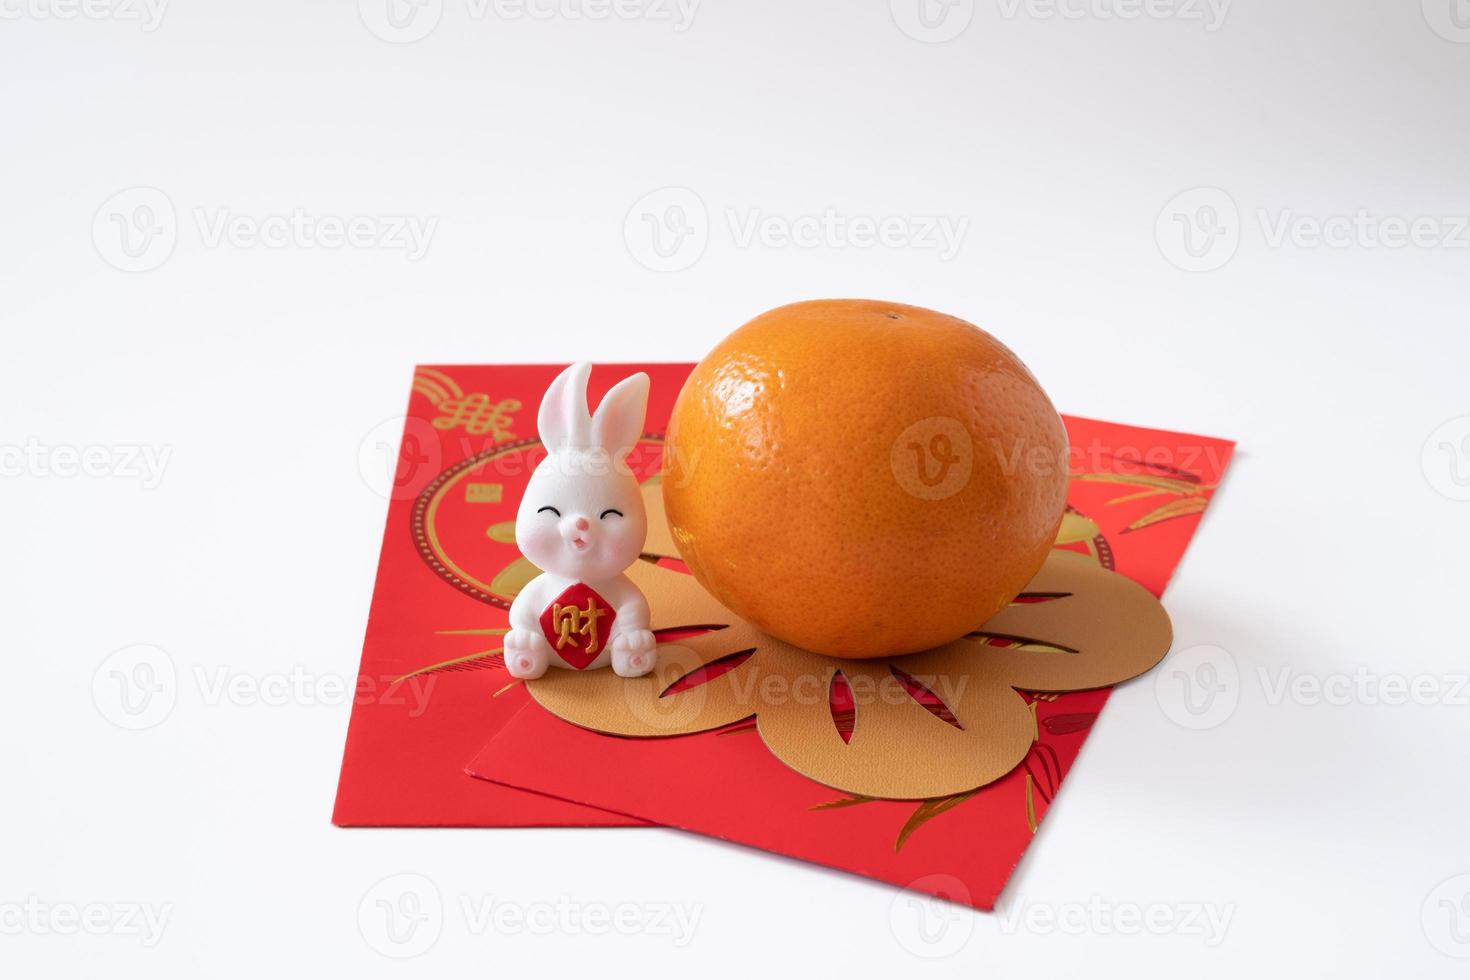 nouvel an chinois du concept du festival du lapin. mandarine, lapin et lingot d'or isolé sur fond blanc. photo